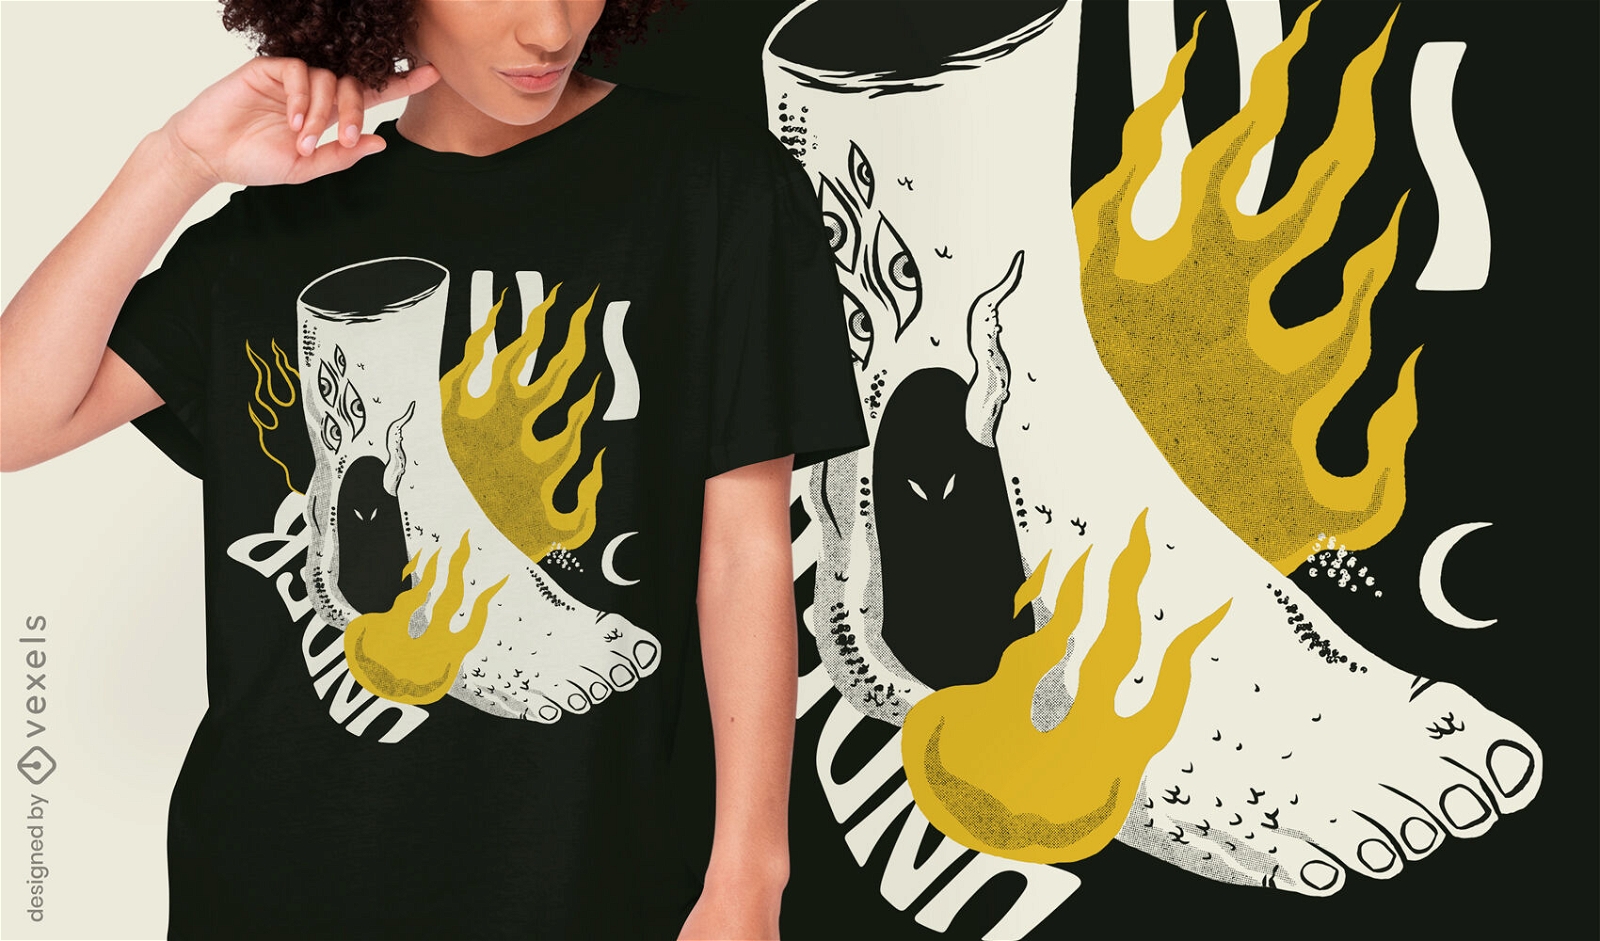 Bizarres Body Foot on Fire T-Shirt Design